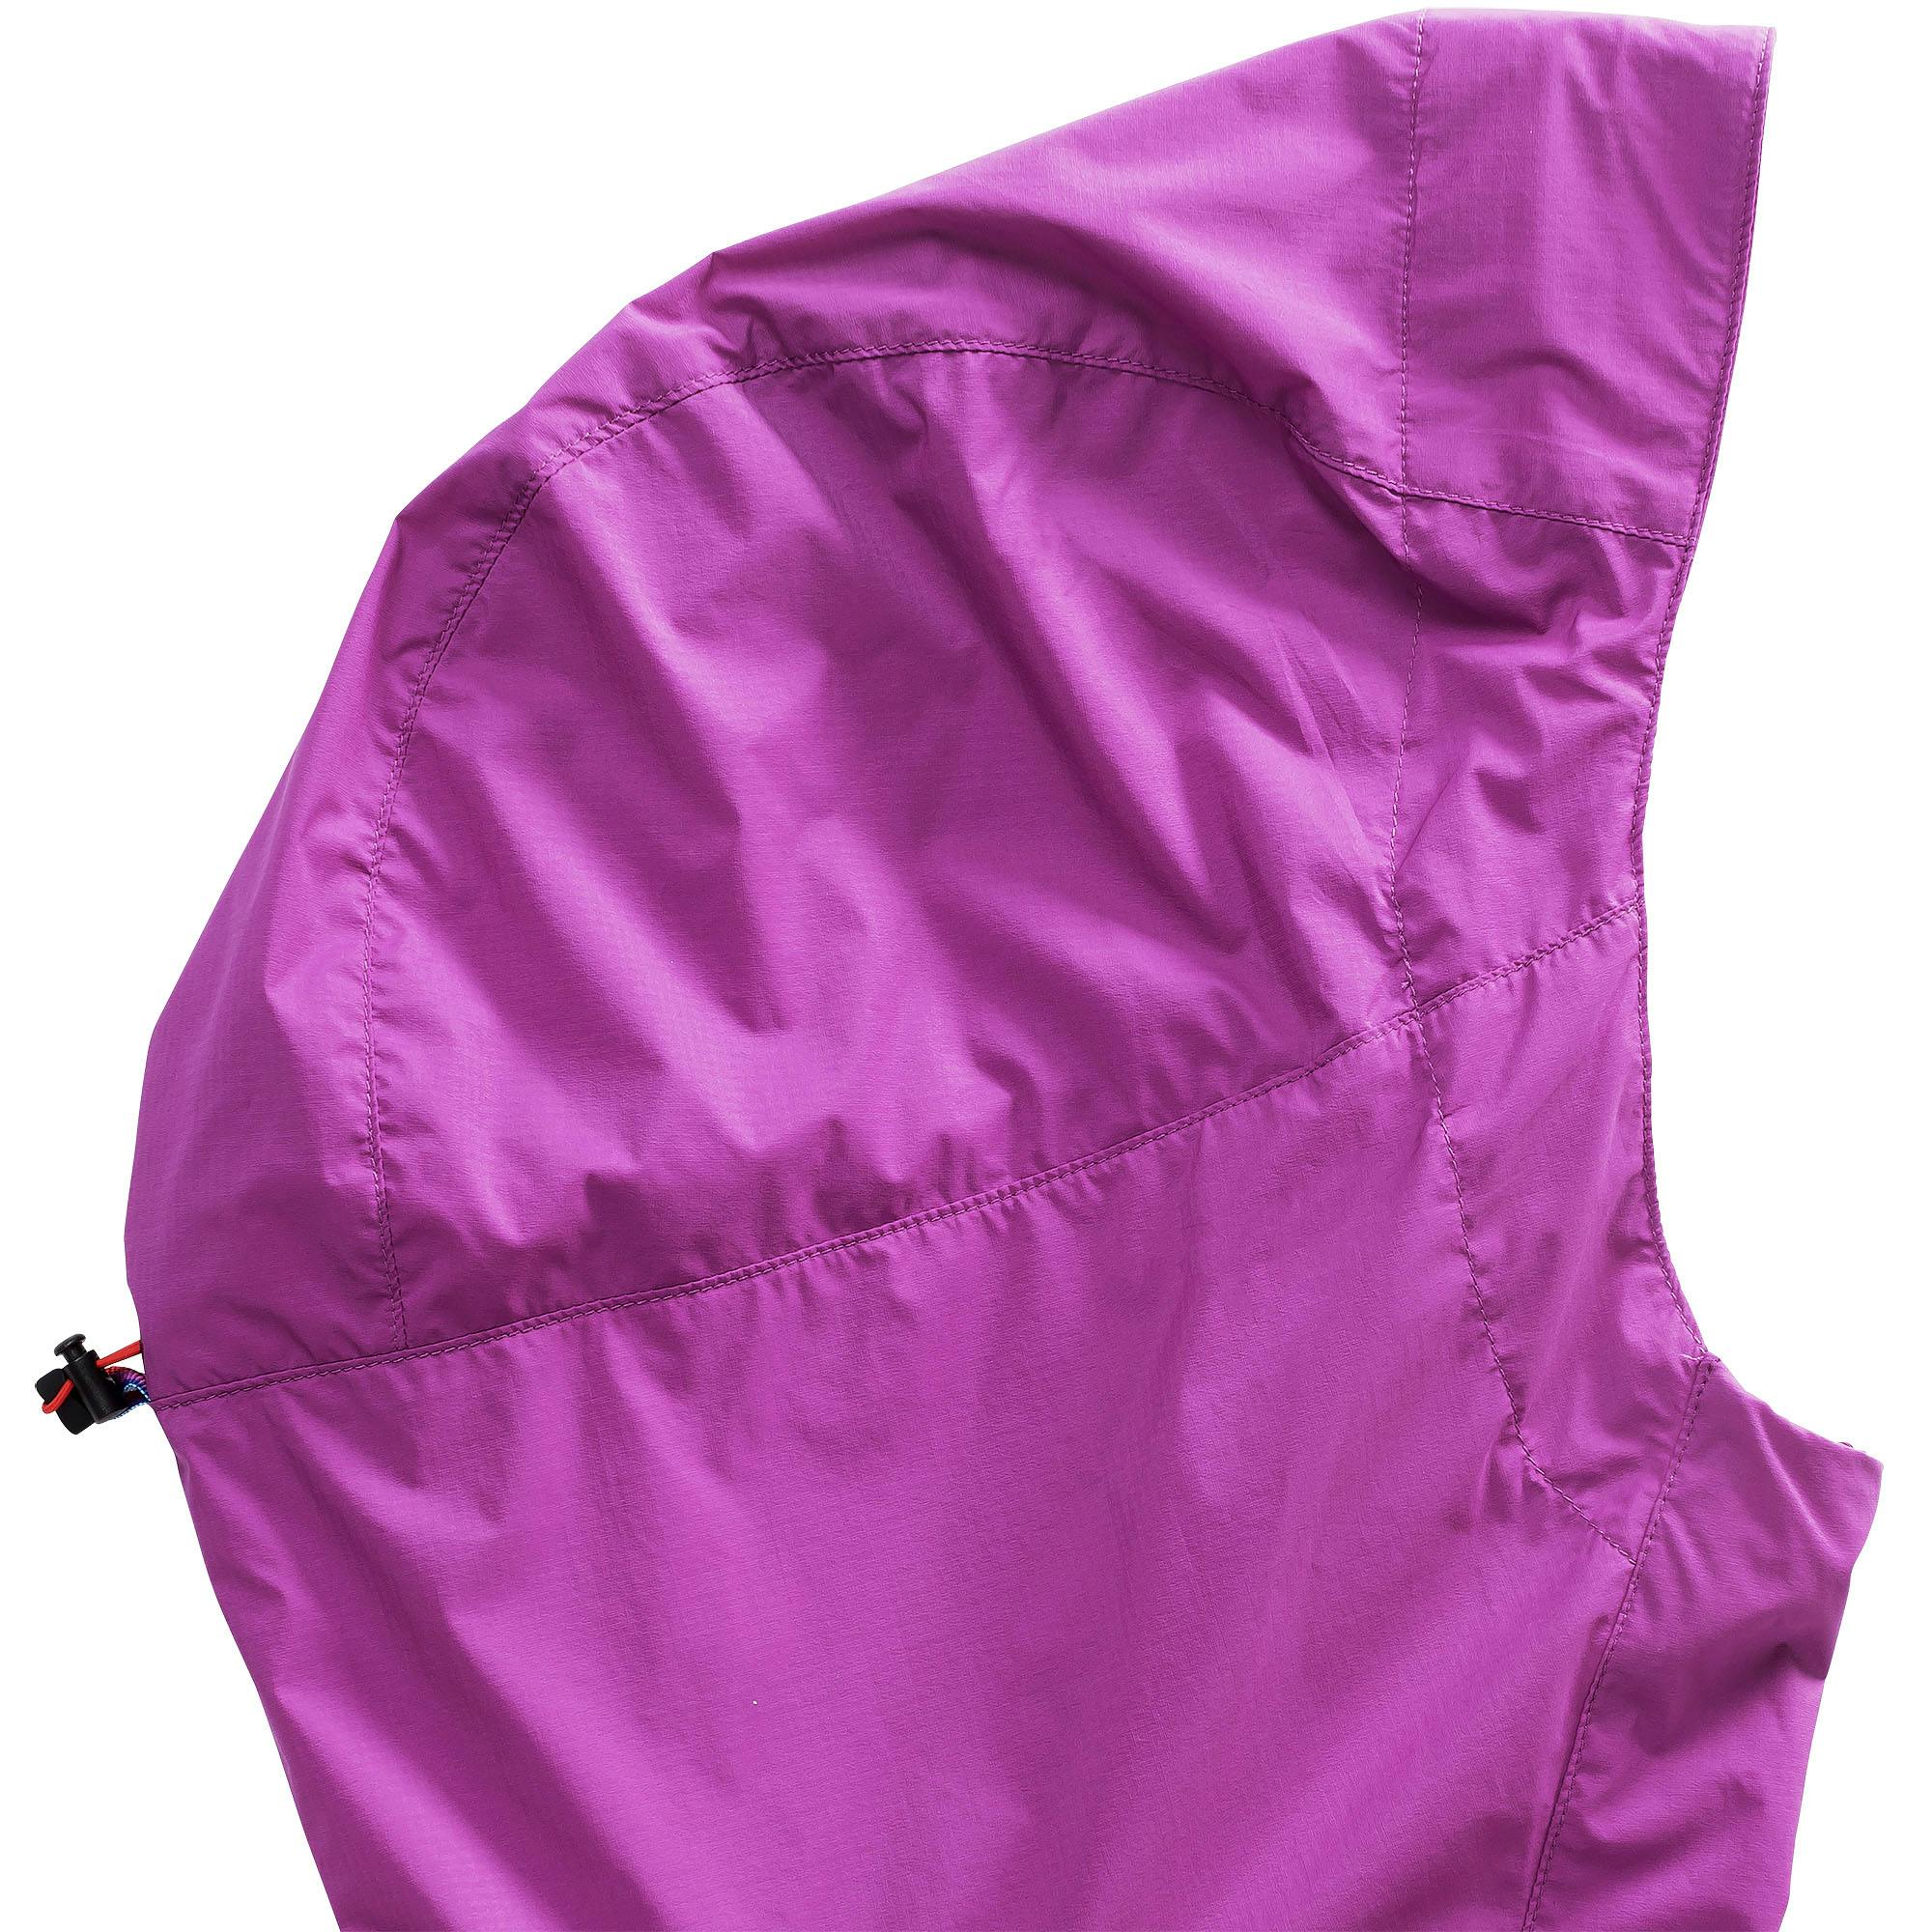 w_la_bise_jacket_purple_wine_20121032560_detail_1_1